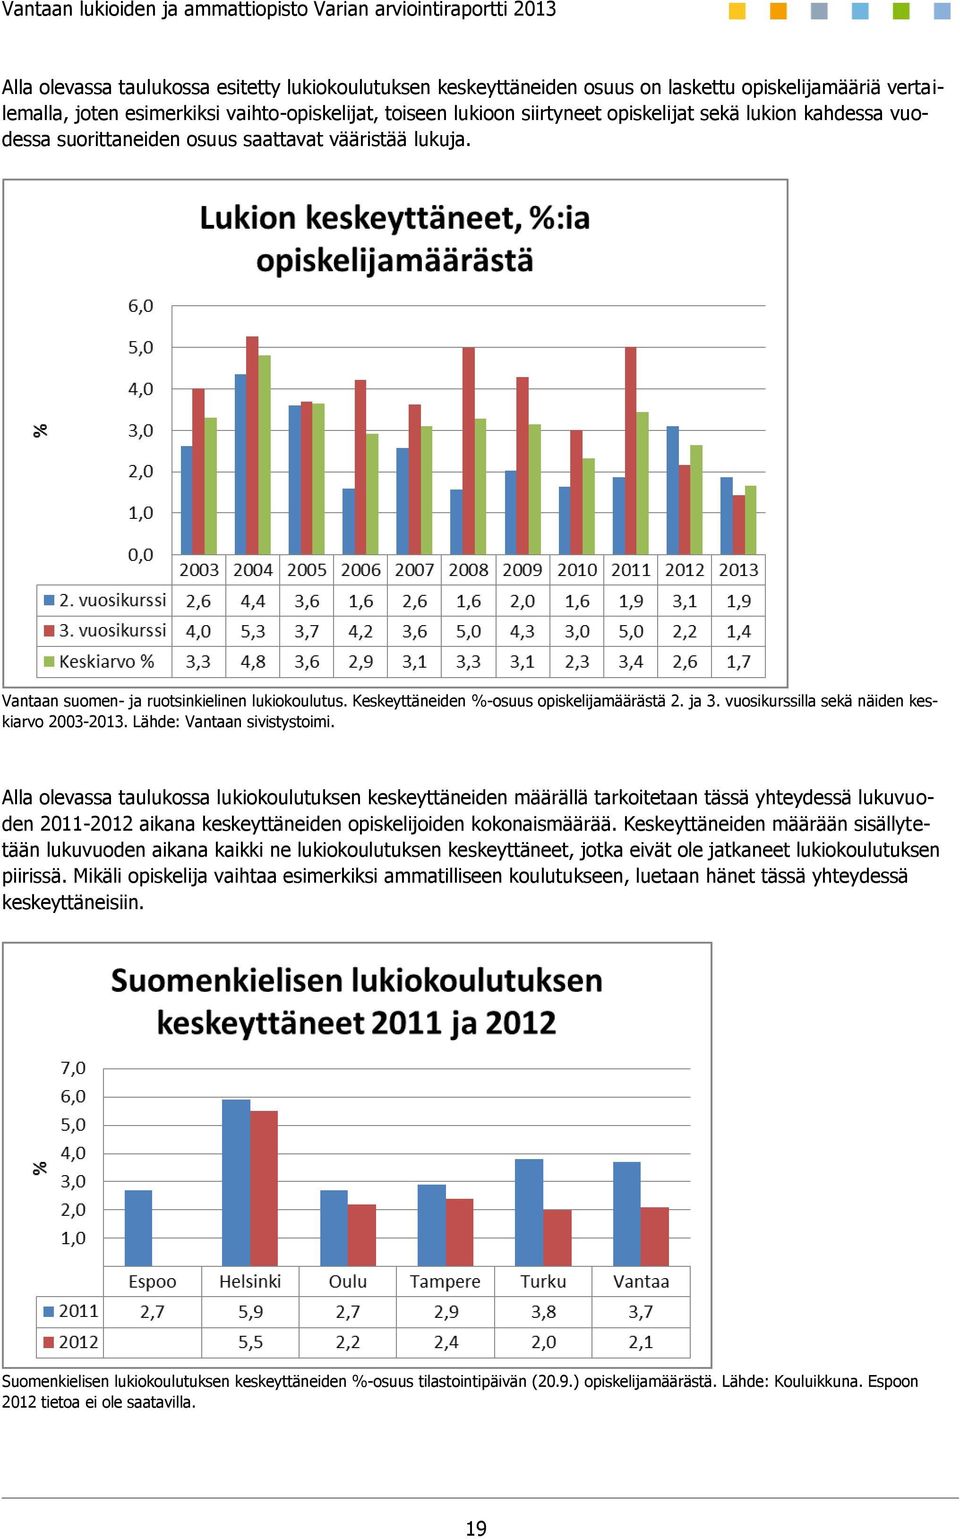 vuosikurssilla sekä näiden keskiarvo 2003-2013. Lähde: Vantaan sivistystoimi.